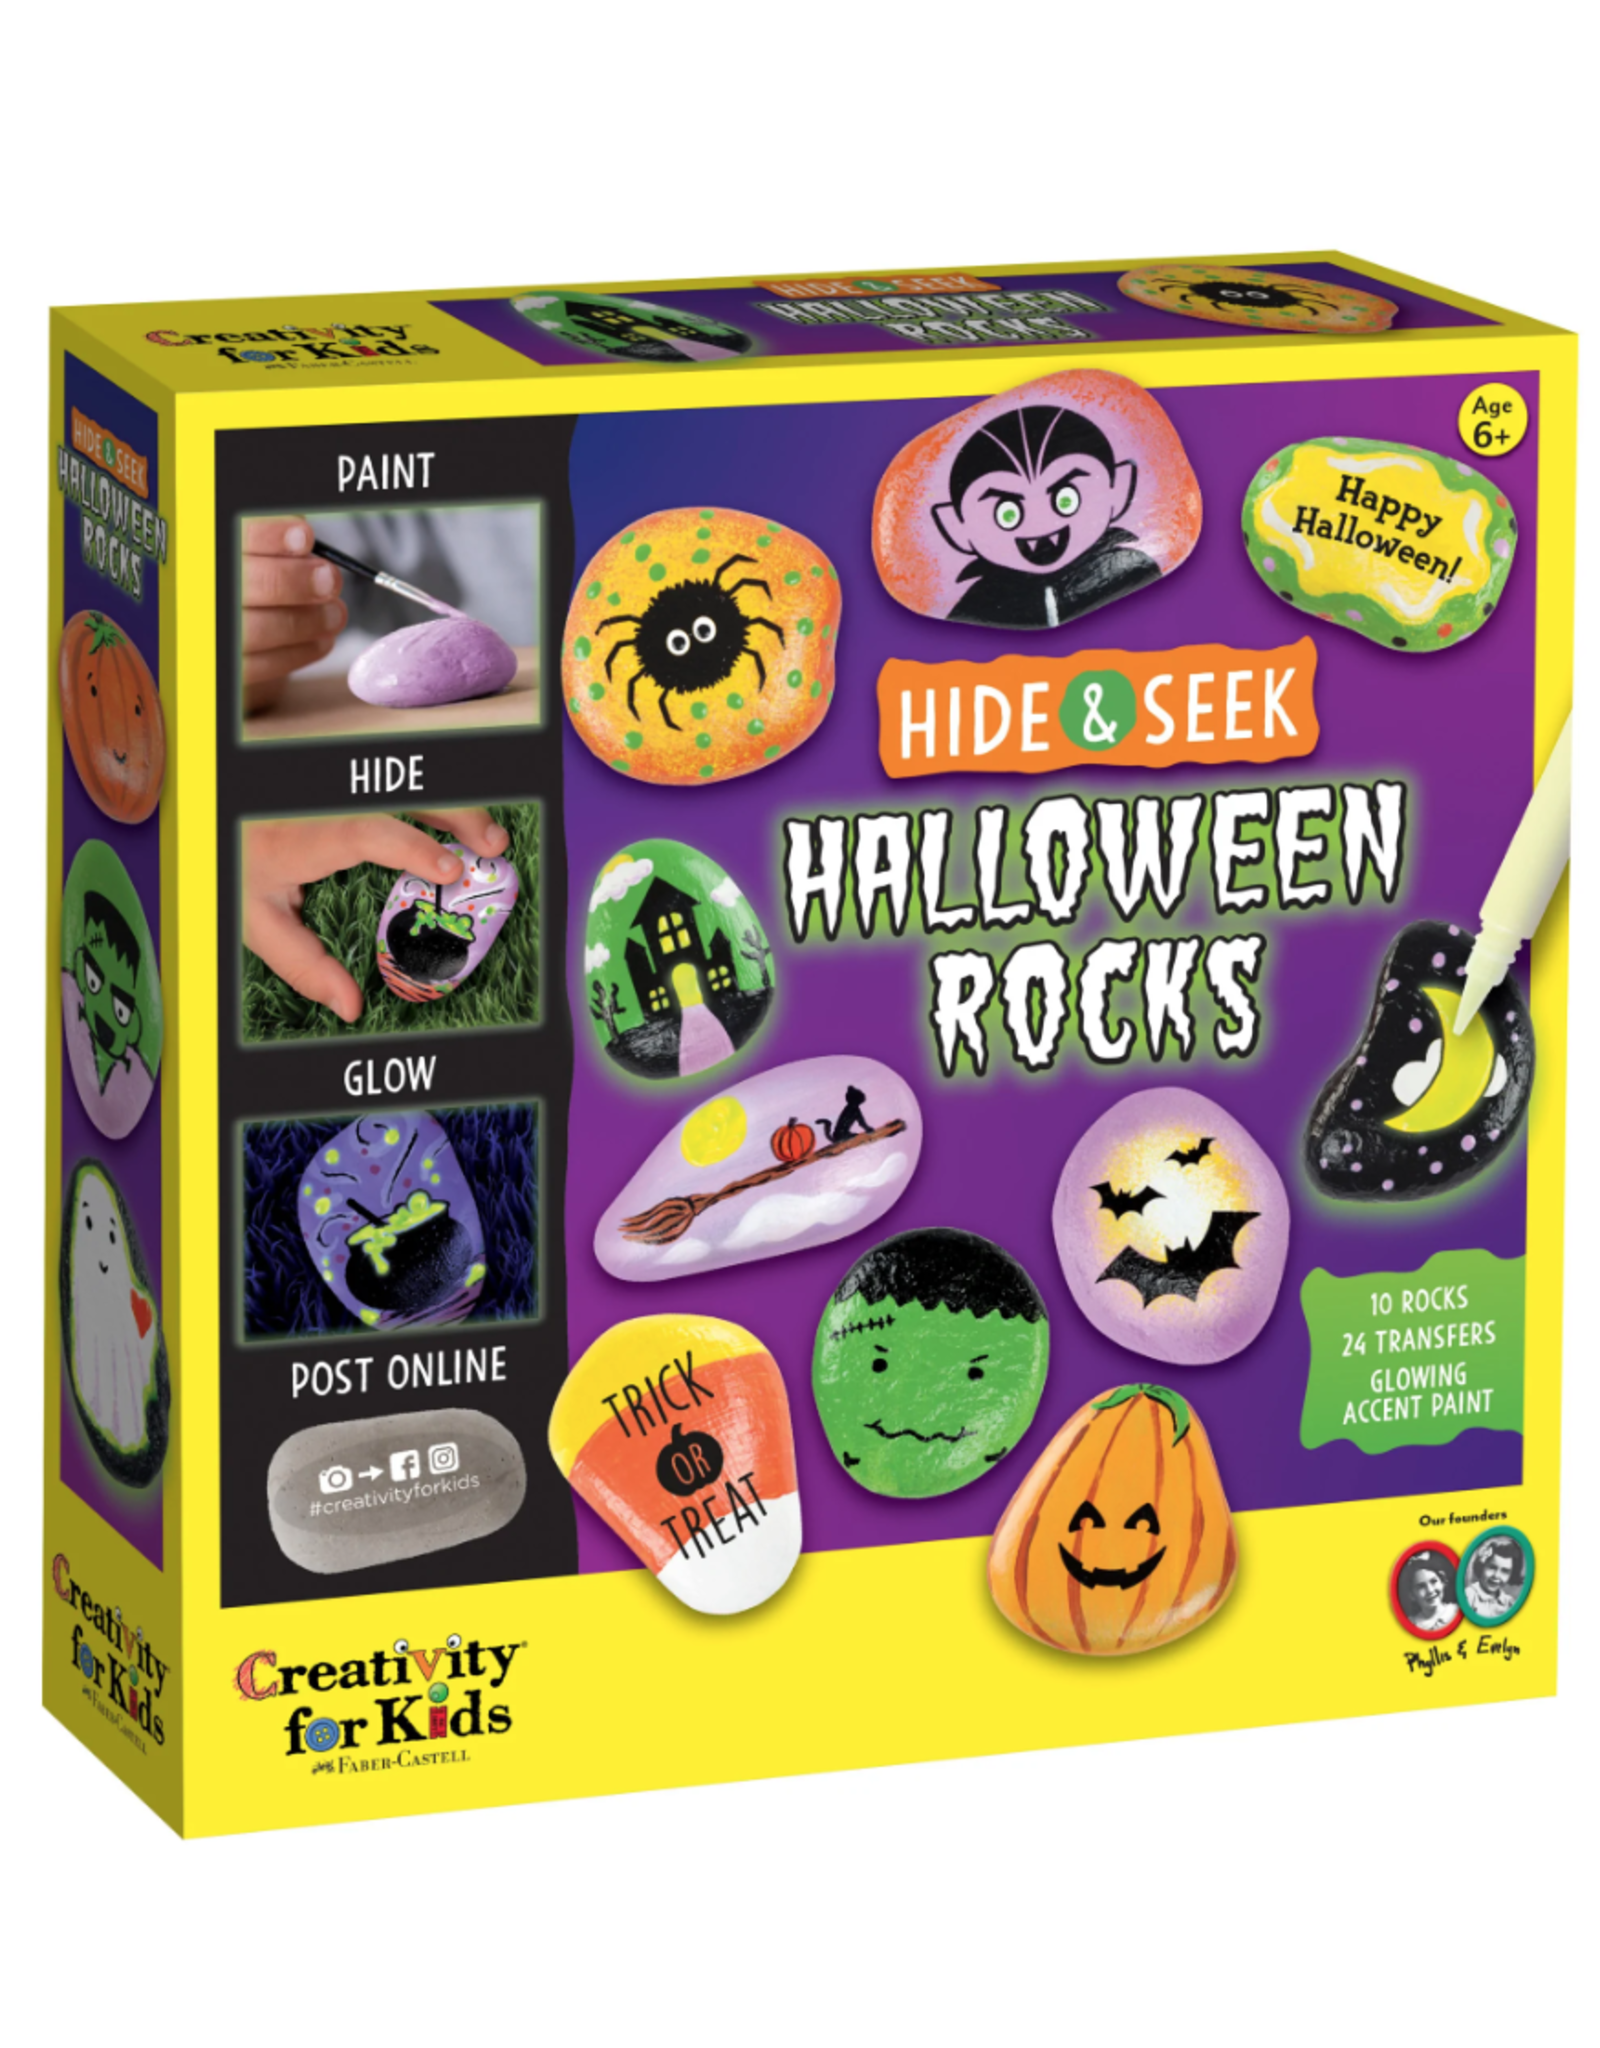 Creativity For Kids Halloween  Hide & Seek Rock Painting